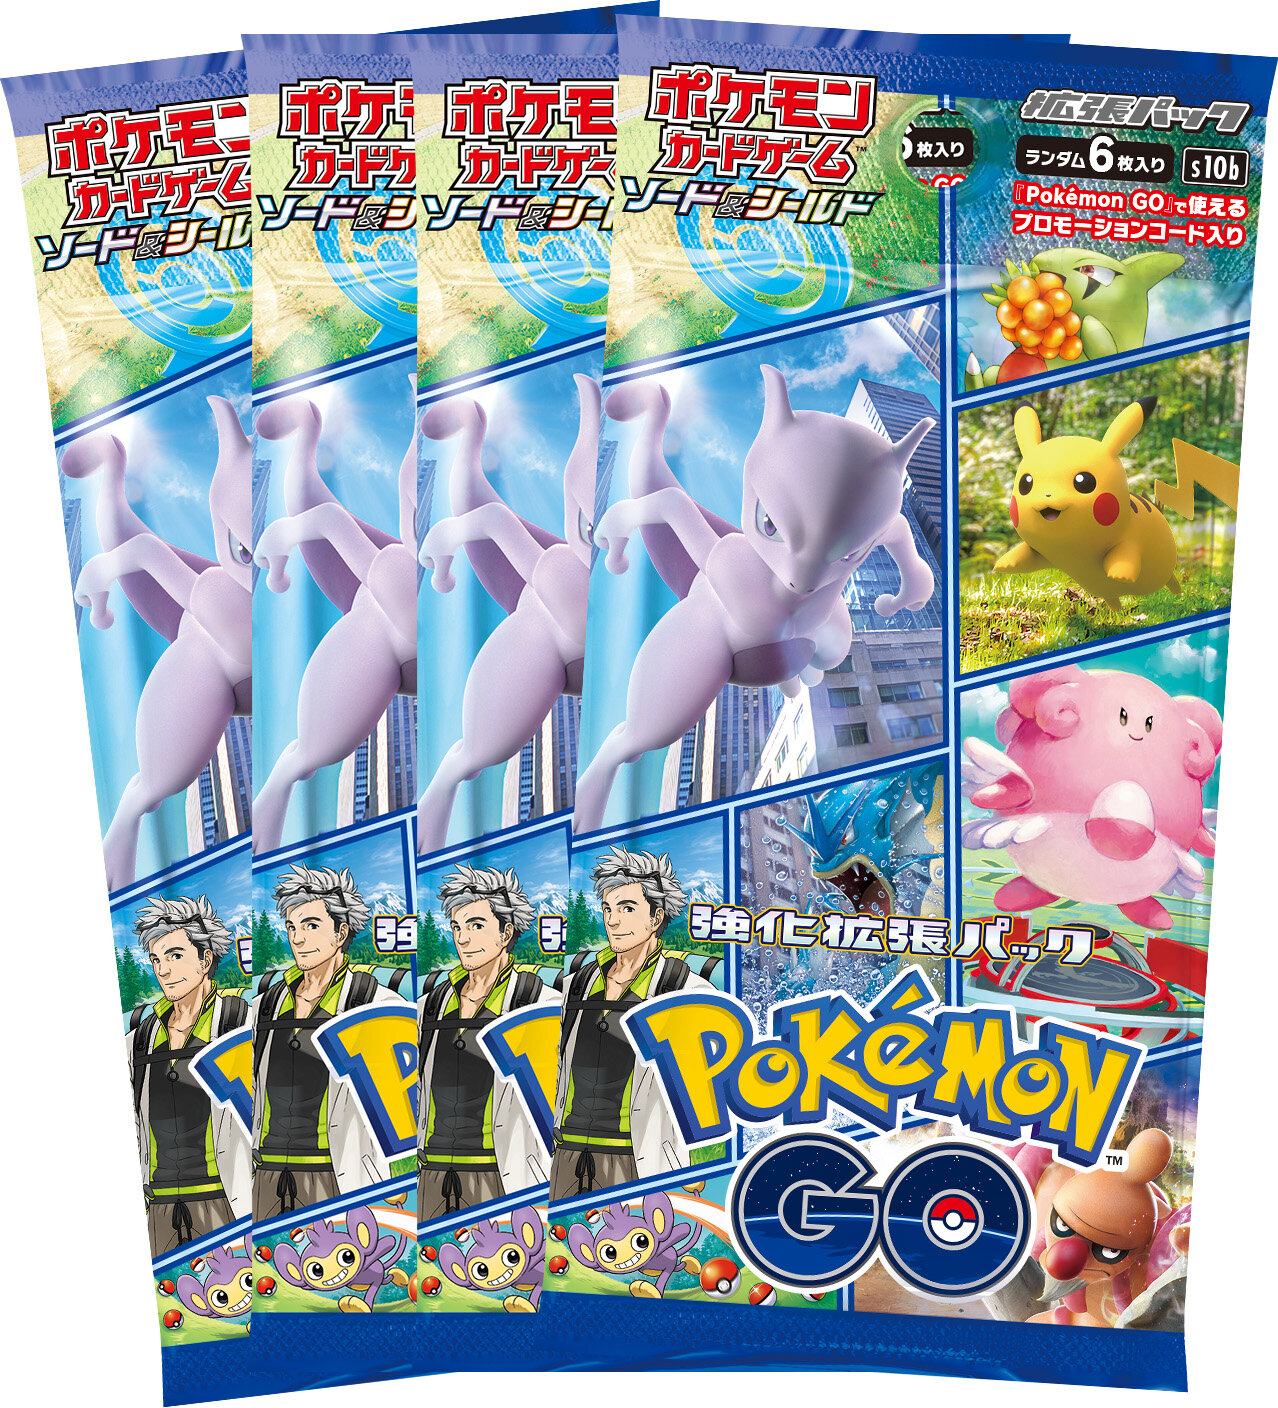 強化拡張パック「Pokémon GO」の入った、セット商品2種類の内容物を ...